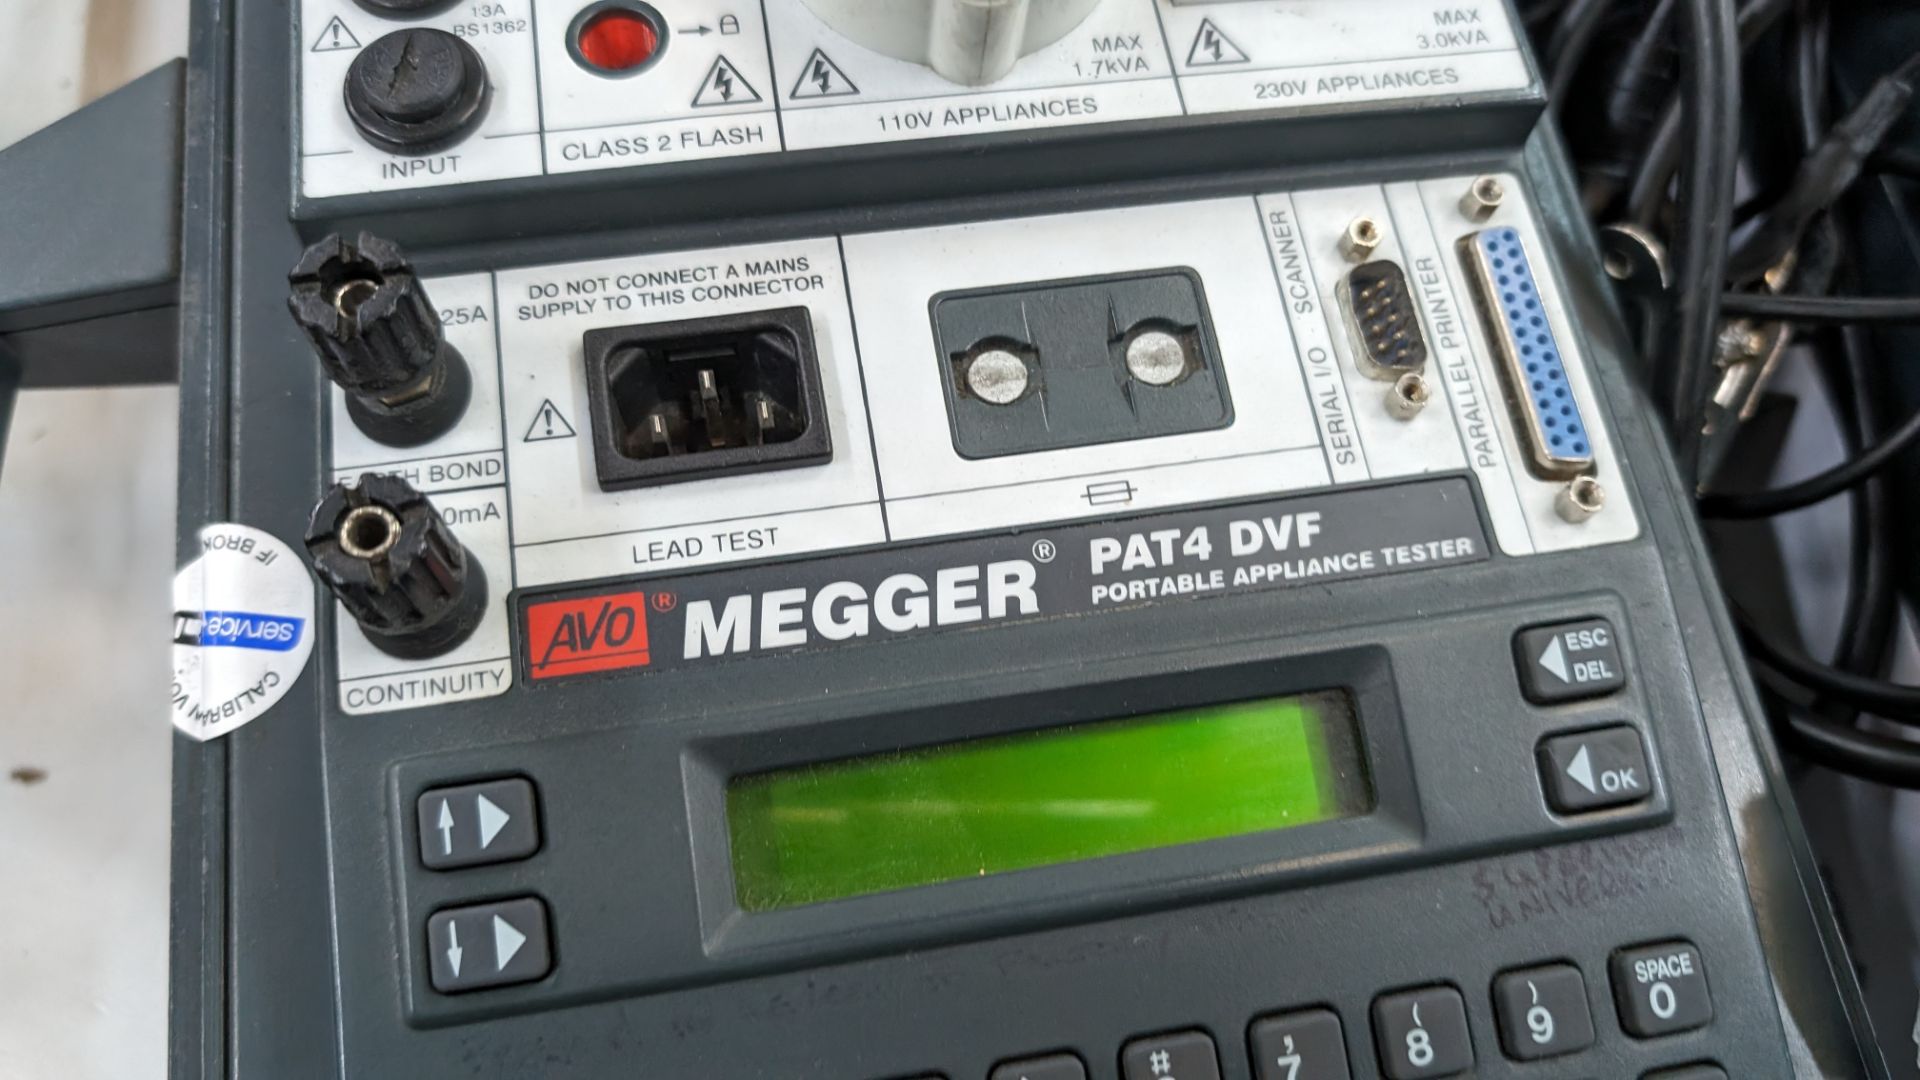 Megger PAT4 DVF portable appliance tester - Image 4 of 11